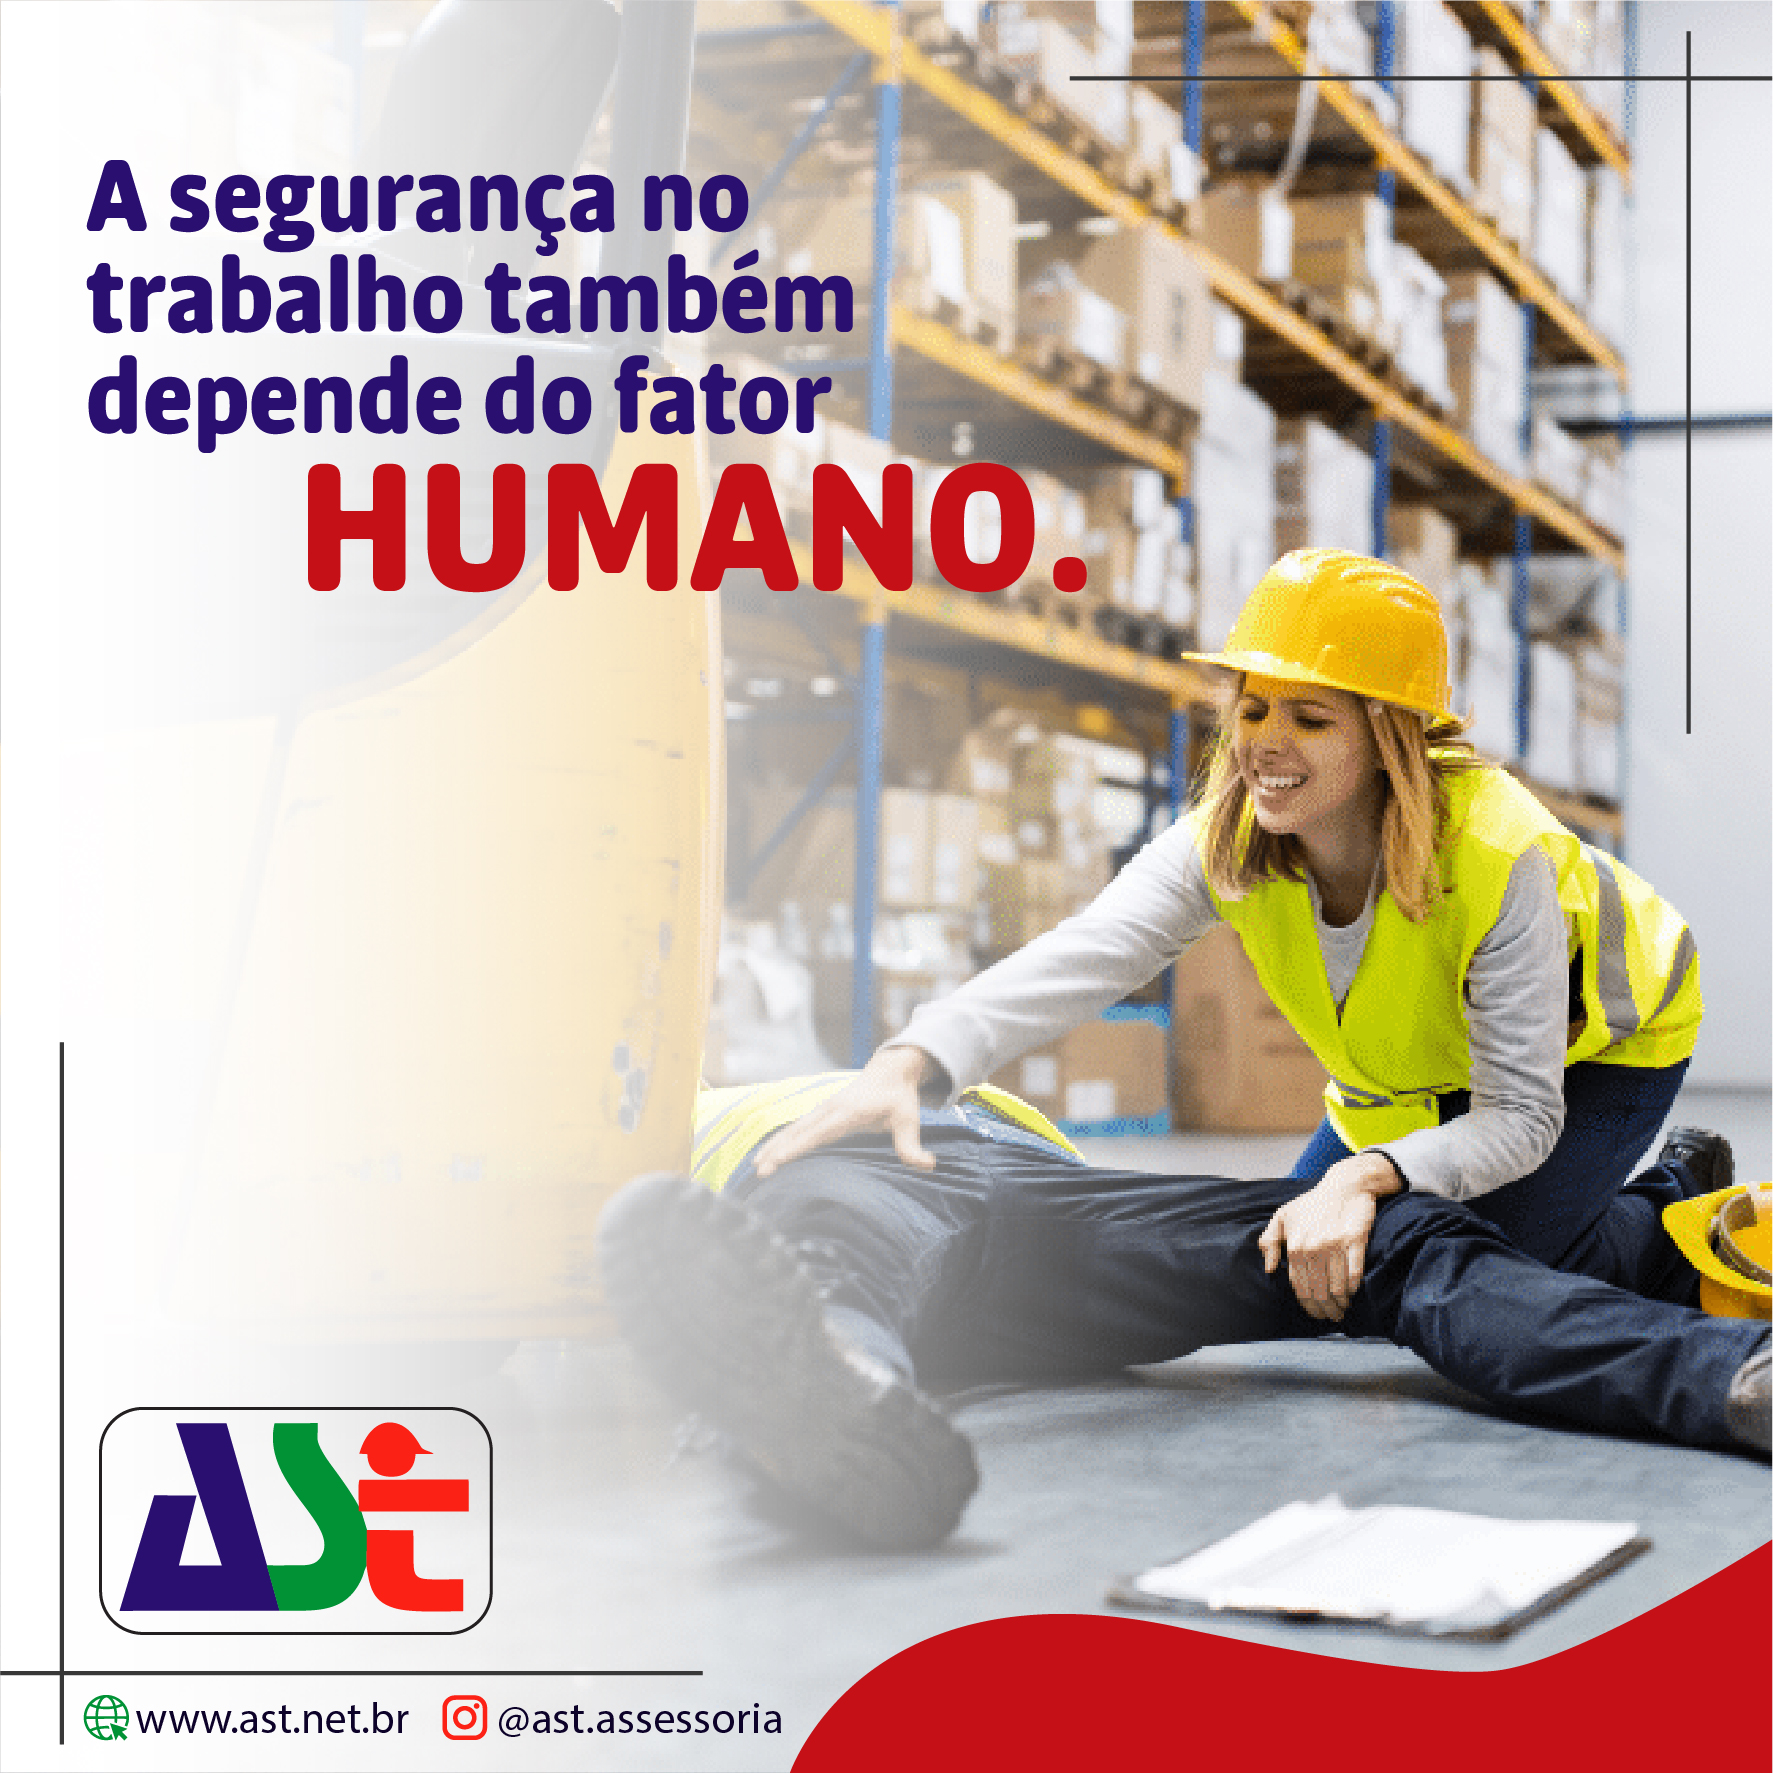 A segurança no trabalho também depende do fator humano!